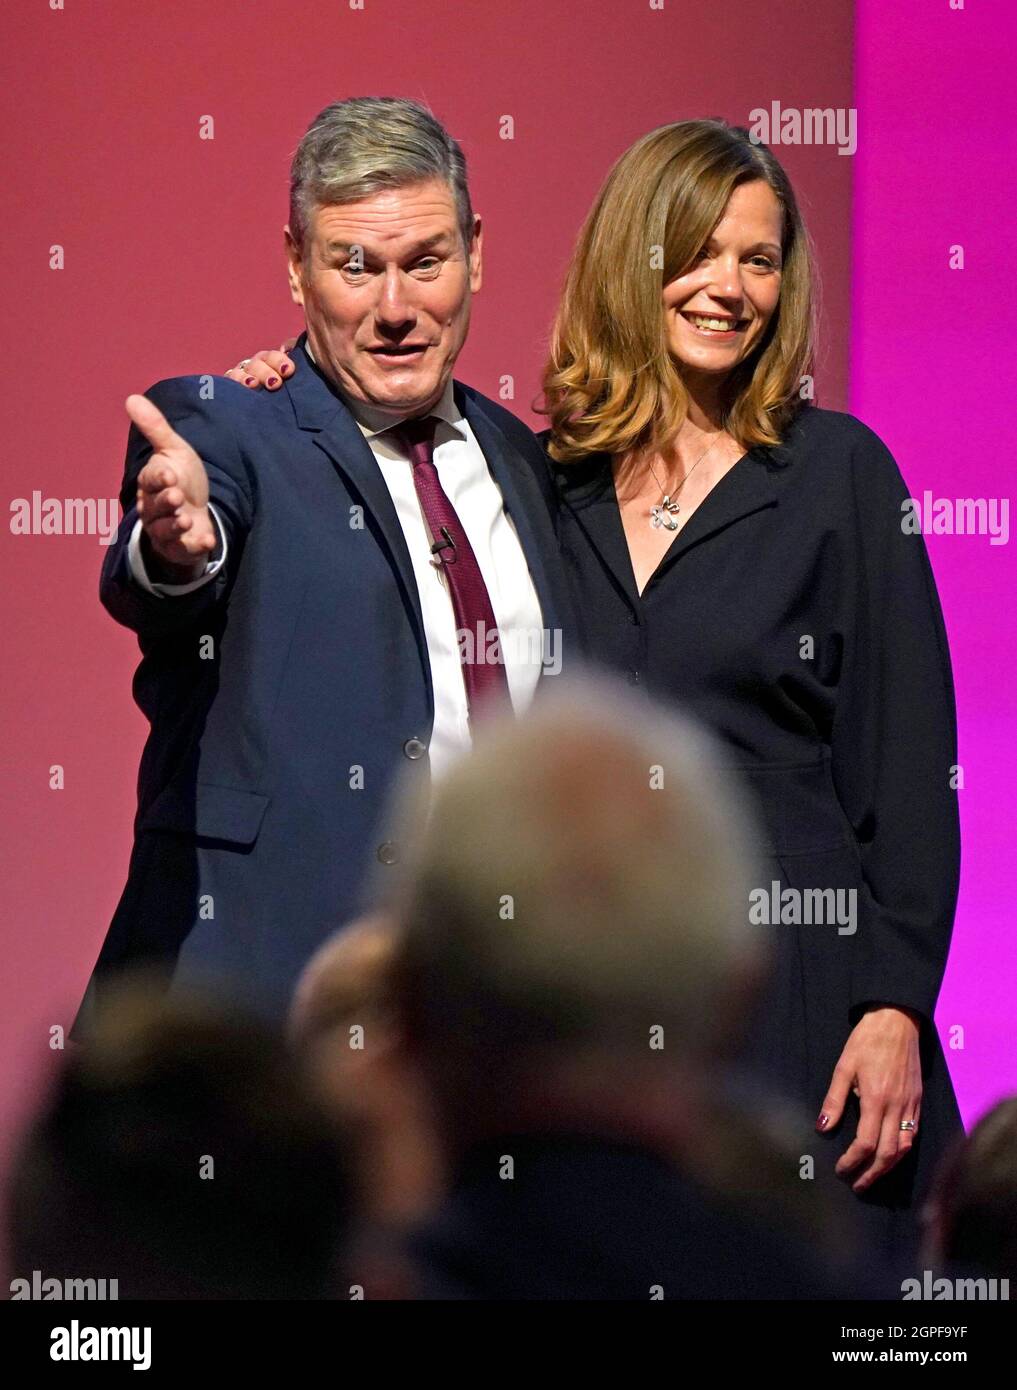 Sir Keir Starmer, chef du parti travailliste, et son épouse Victoria à la fin de son discours à la conférence du Parti travailliste à Brighton. Date de la photo: Mercredi 29 septembre 2021. Banque D'Images